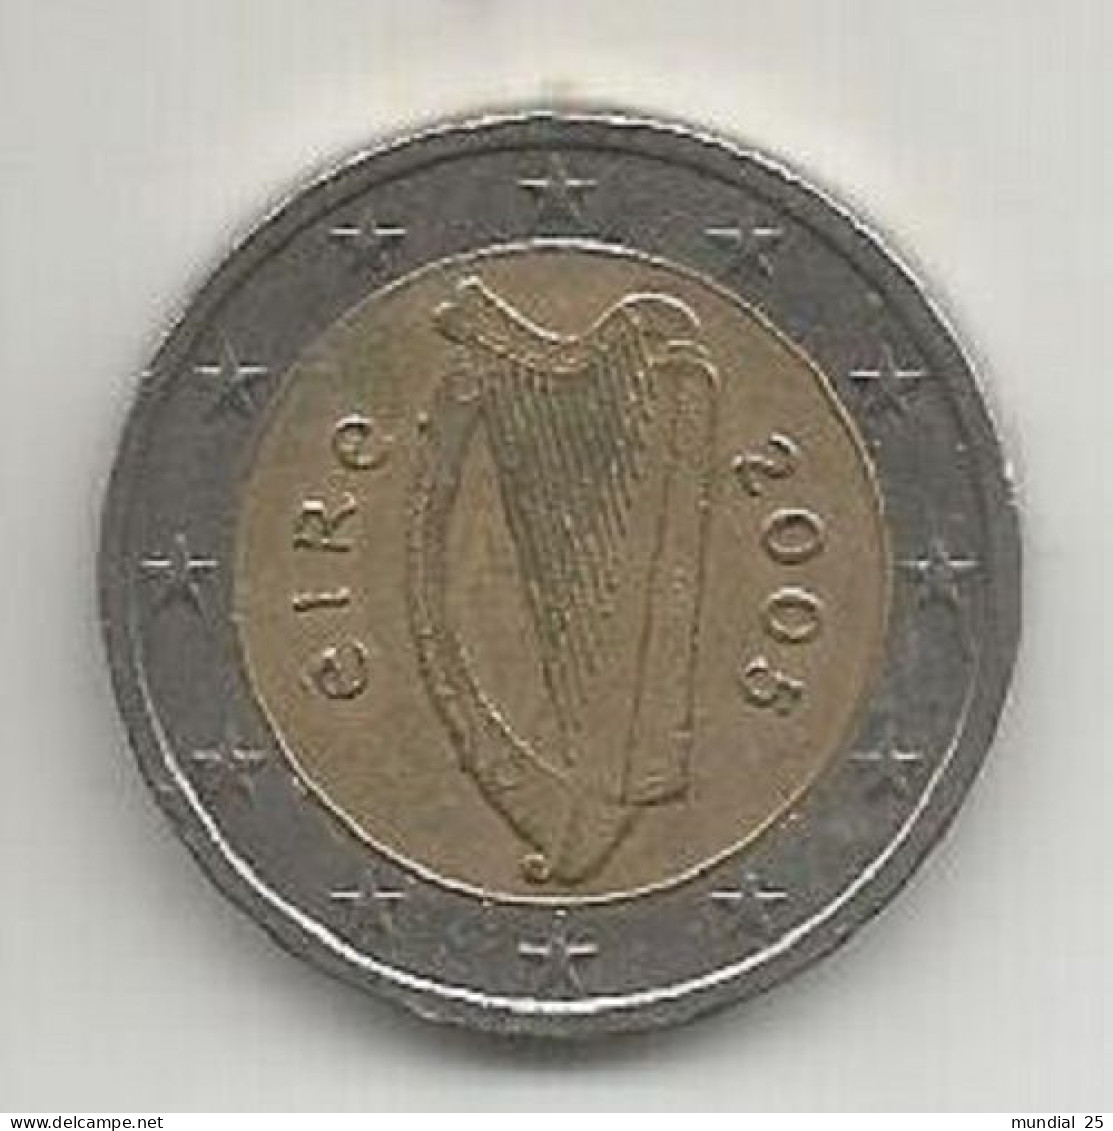 IRELAND 2 EURO 2005 - Irlanda